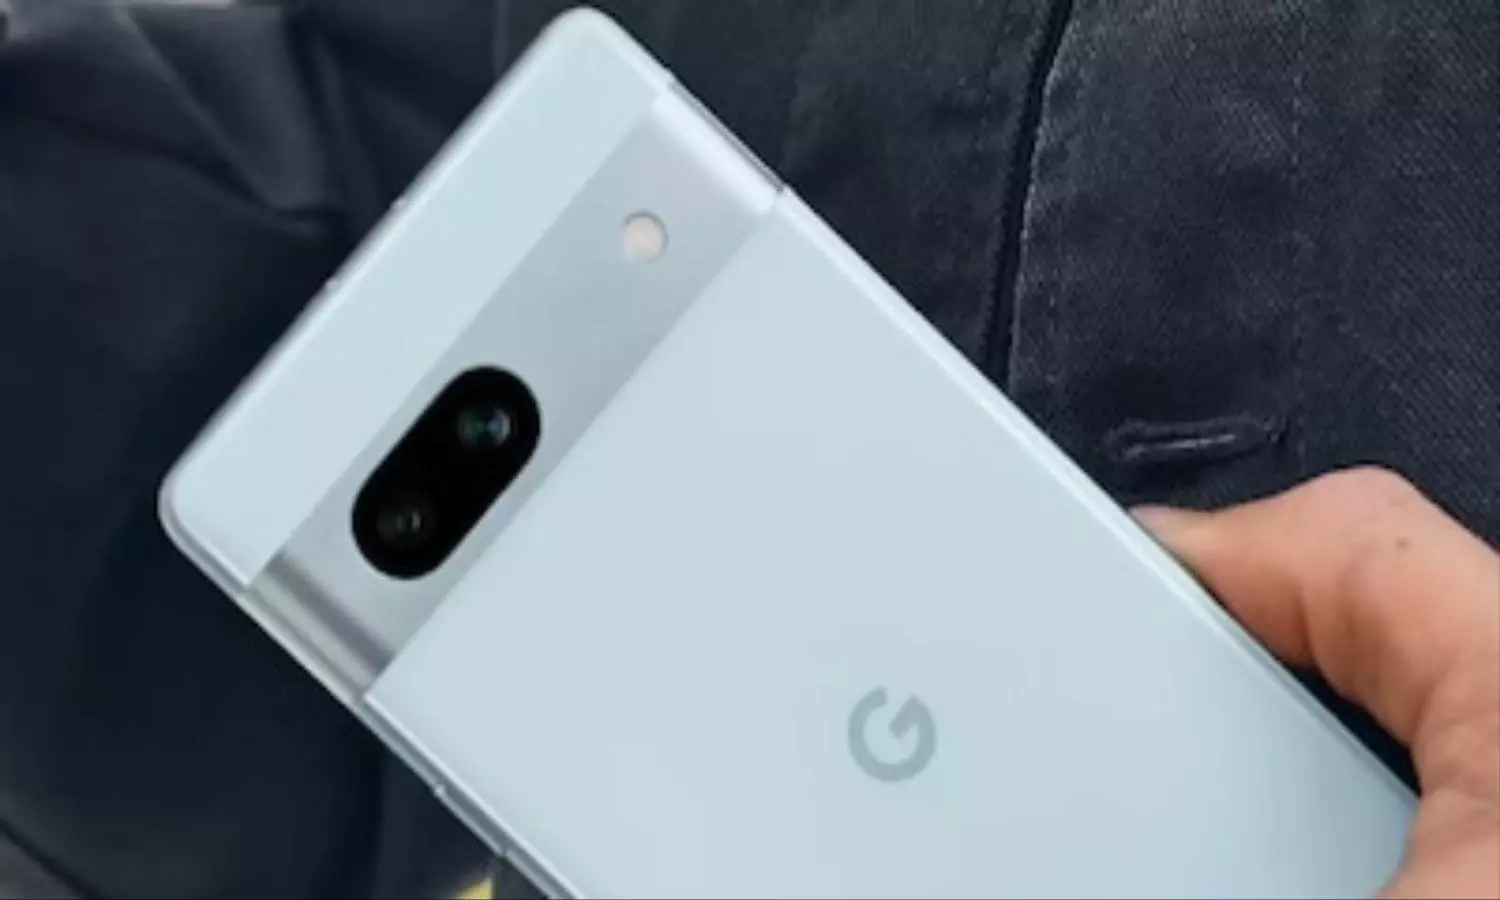 Google Pixel: गूगल पिक्सल स्मार्टफोन को लेकर आई जरूरी अपडेट, स्टोरेज बग की समस्या से परेशान यूजर्स